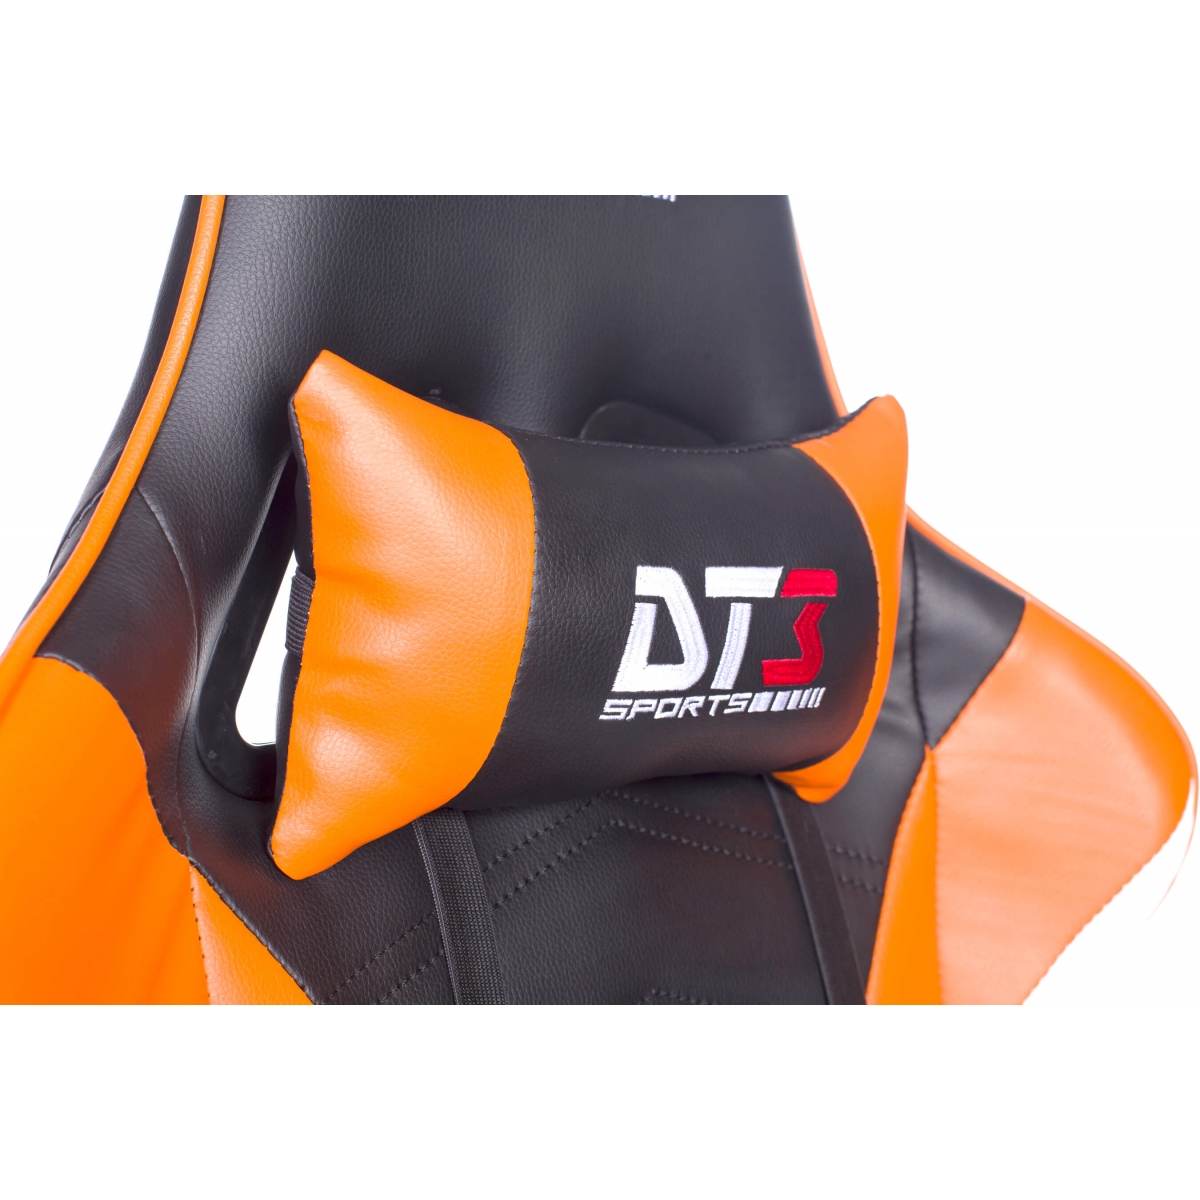 Cadeira Gamer DT3Sports Elise, Black-Orange